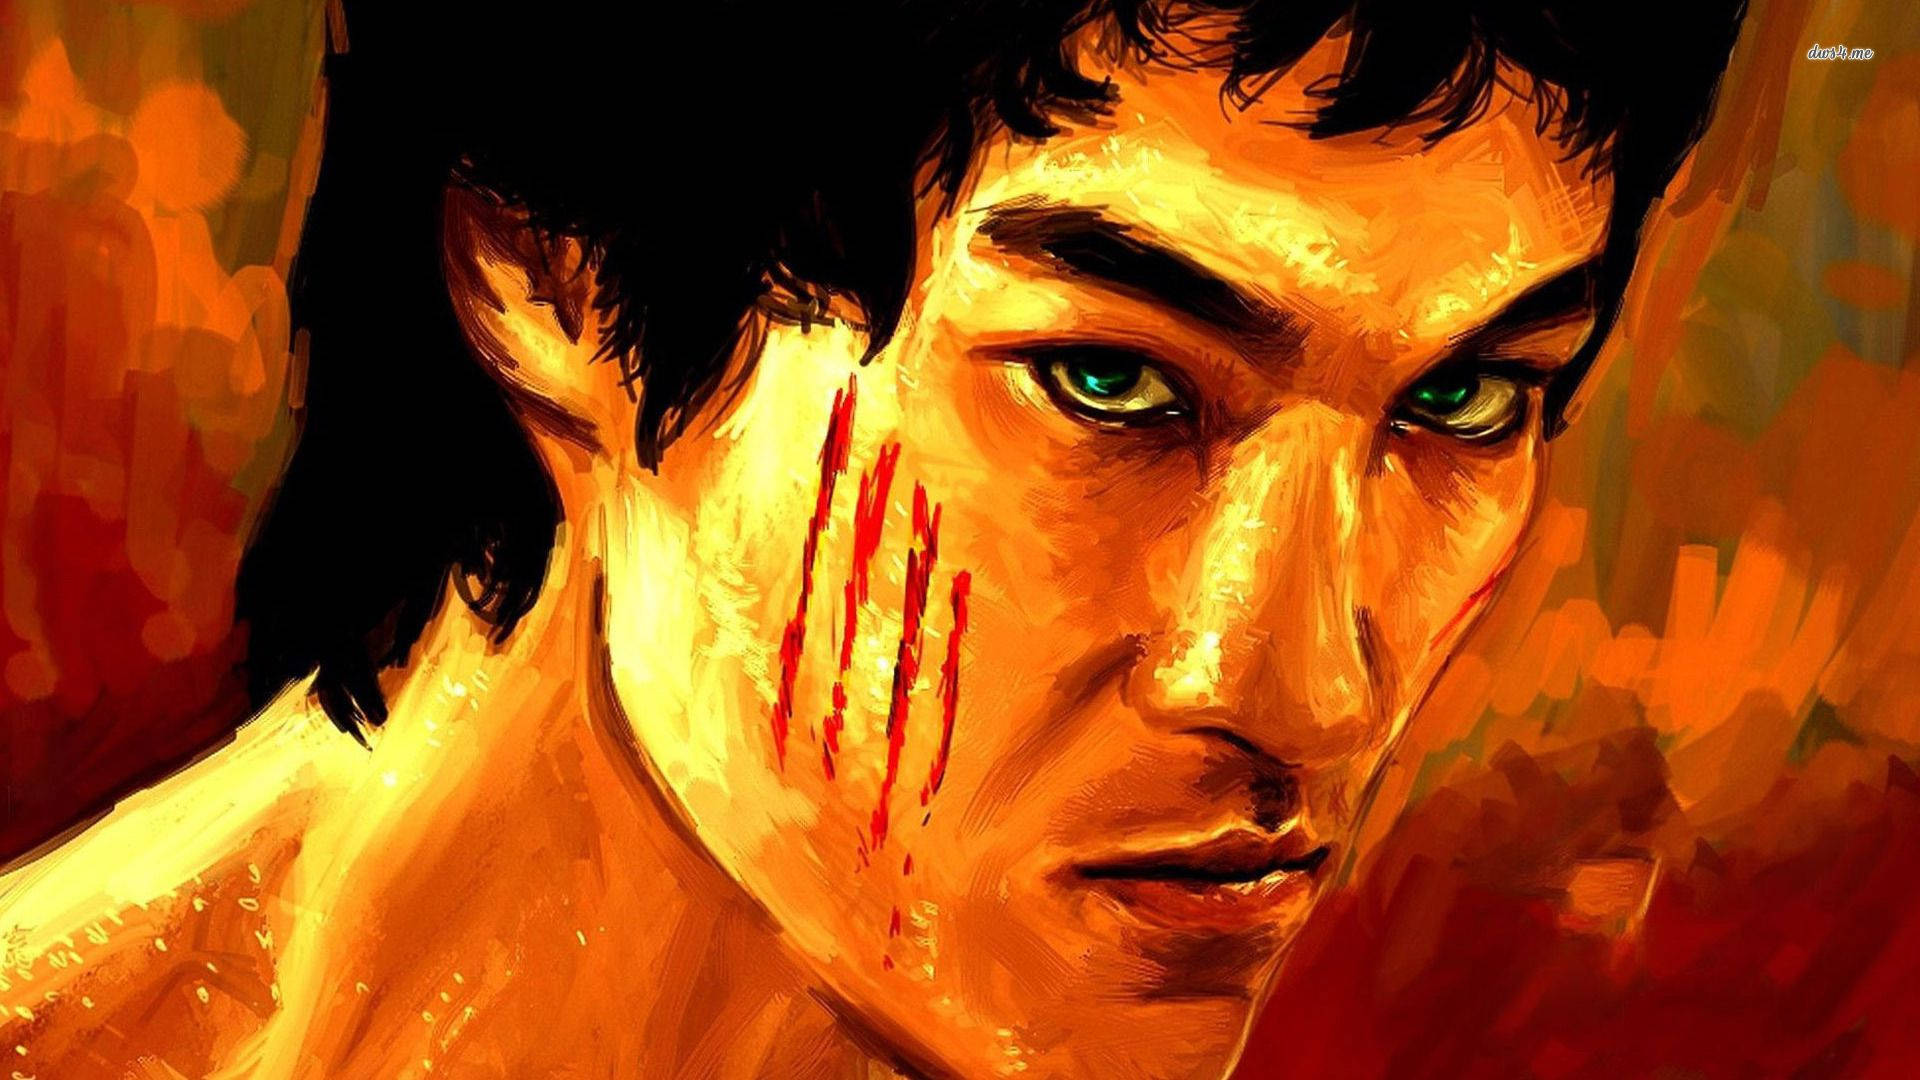 Fierce Looking Bruce Lee Painting